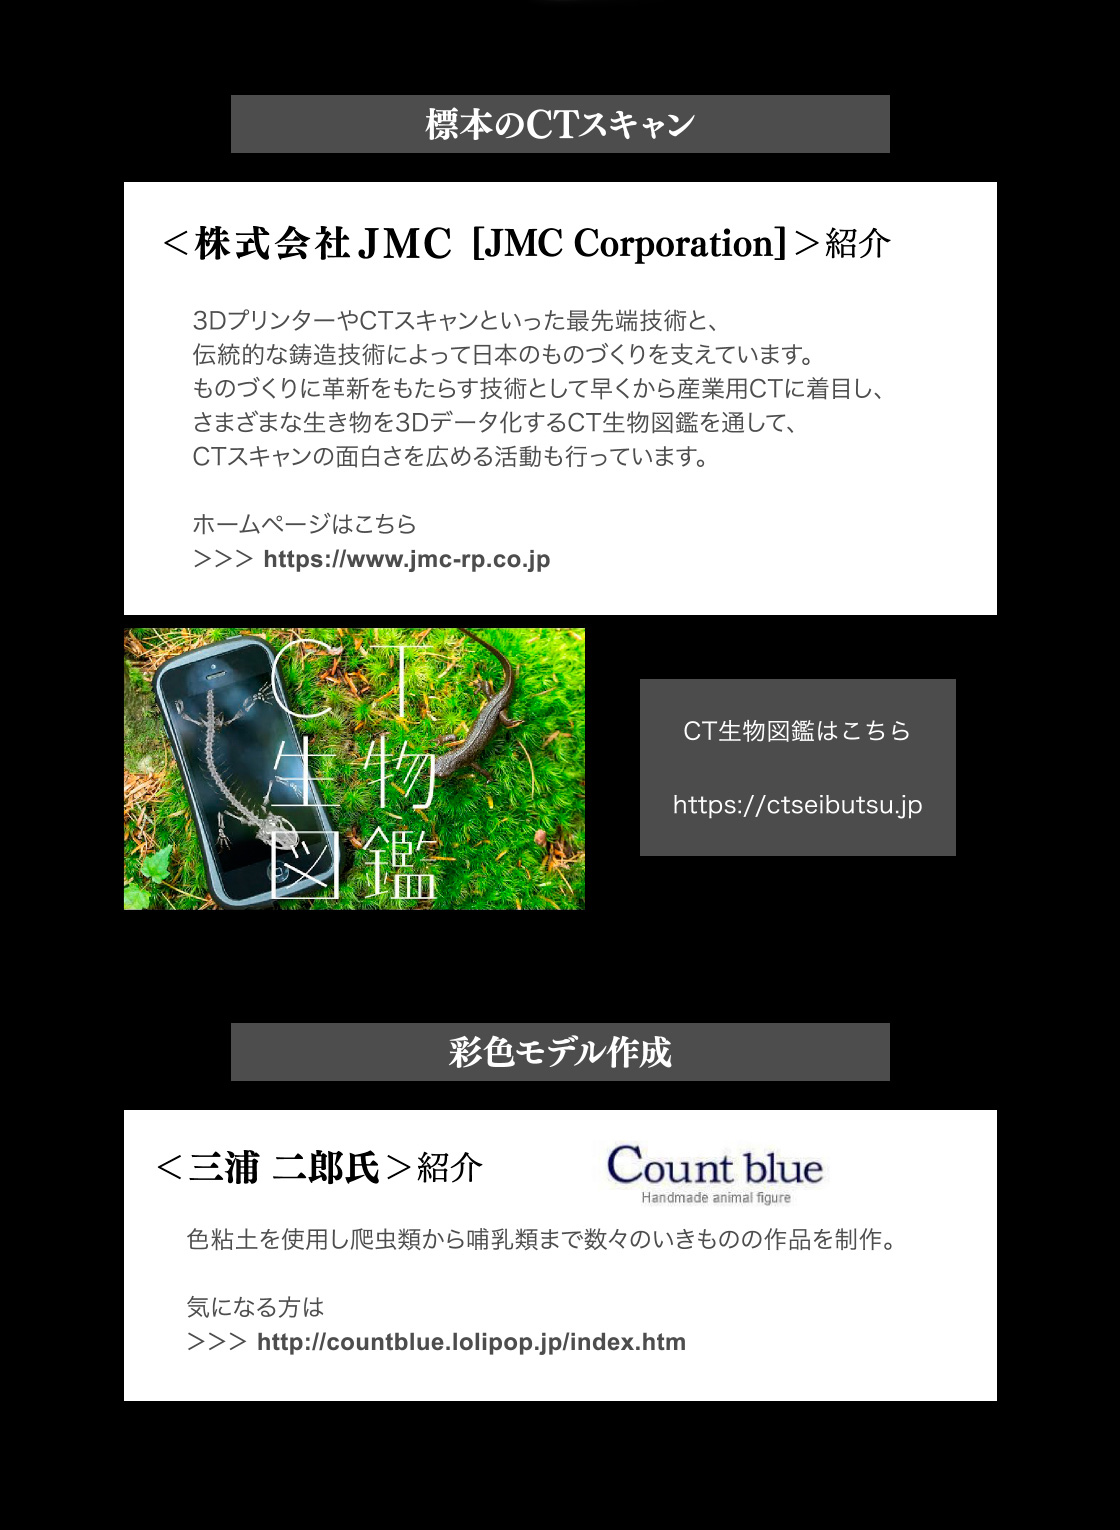 標本CTスキャン：株式会社JMC　CT生物図鑑はこちら　彩色：三浦 二郎氏